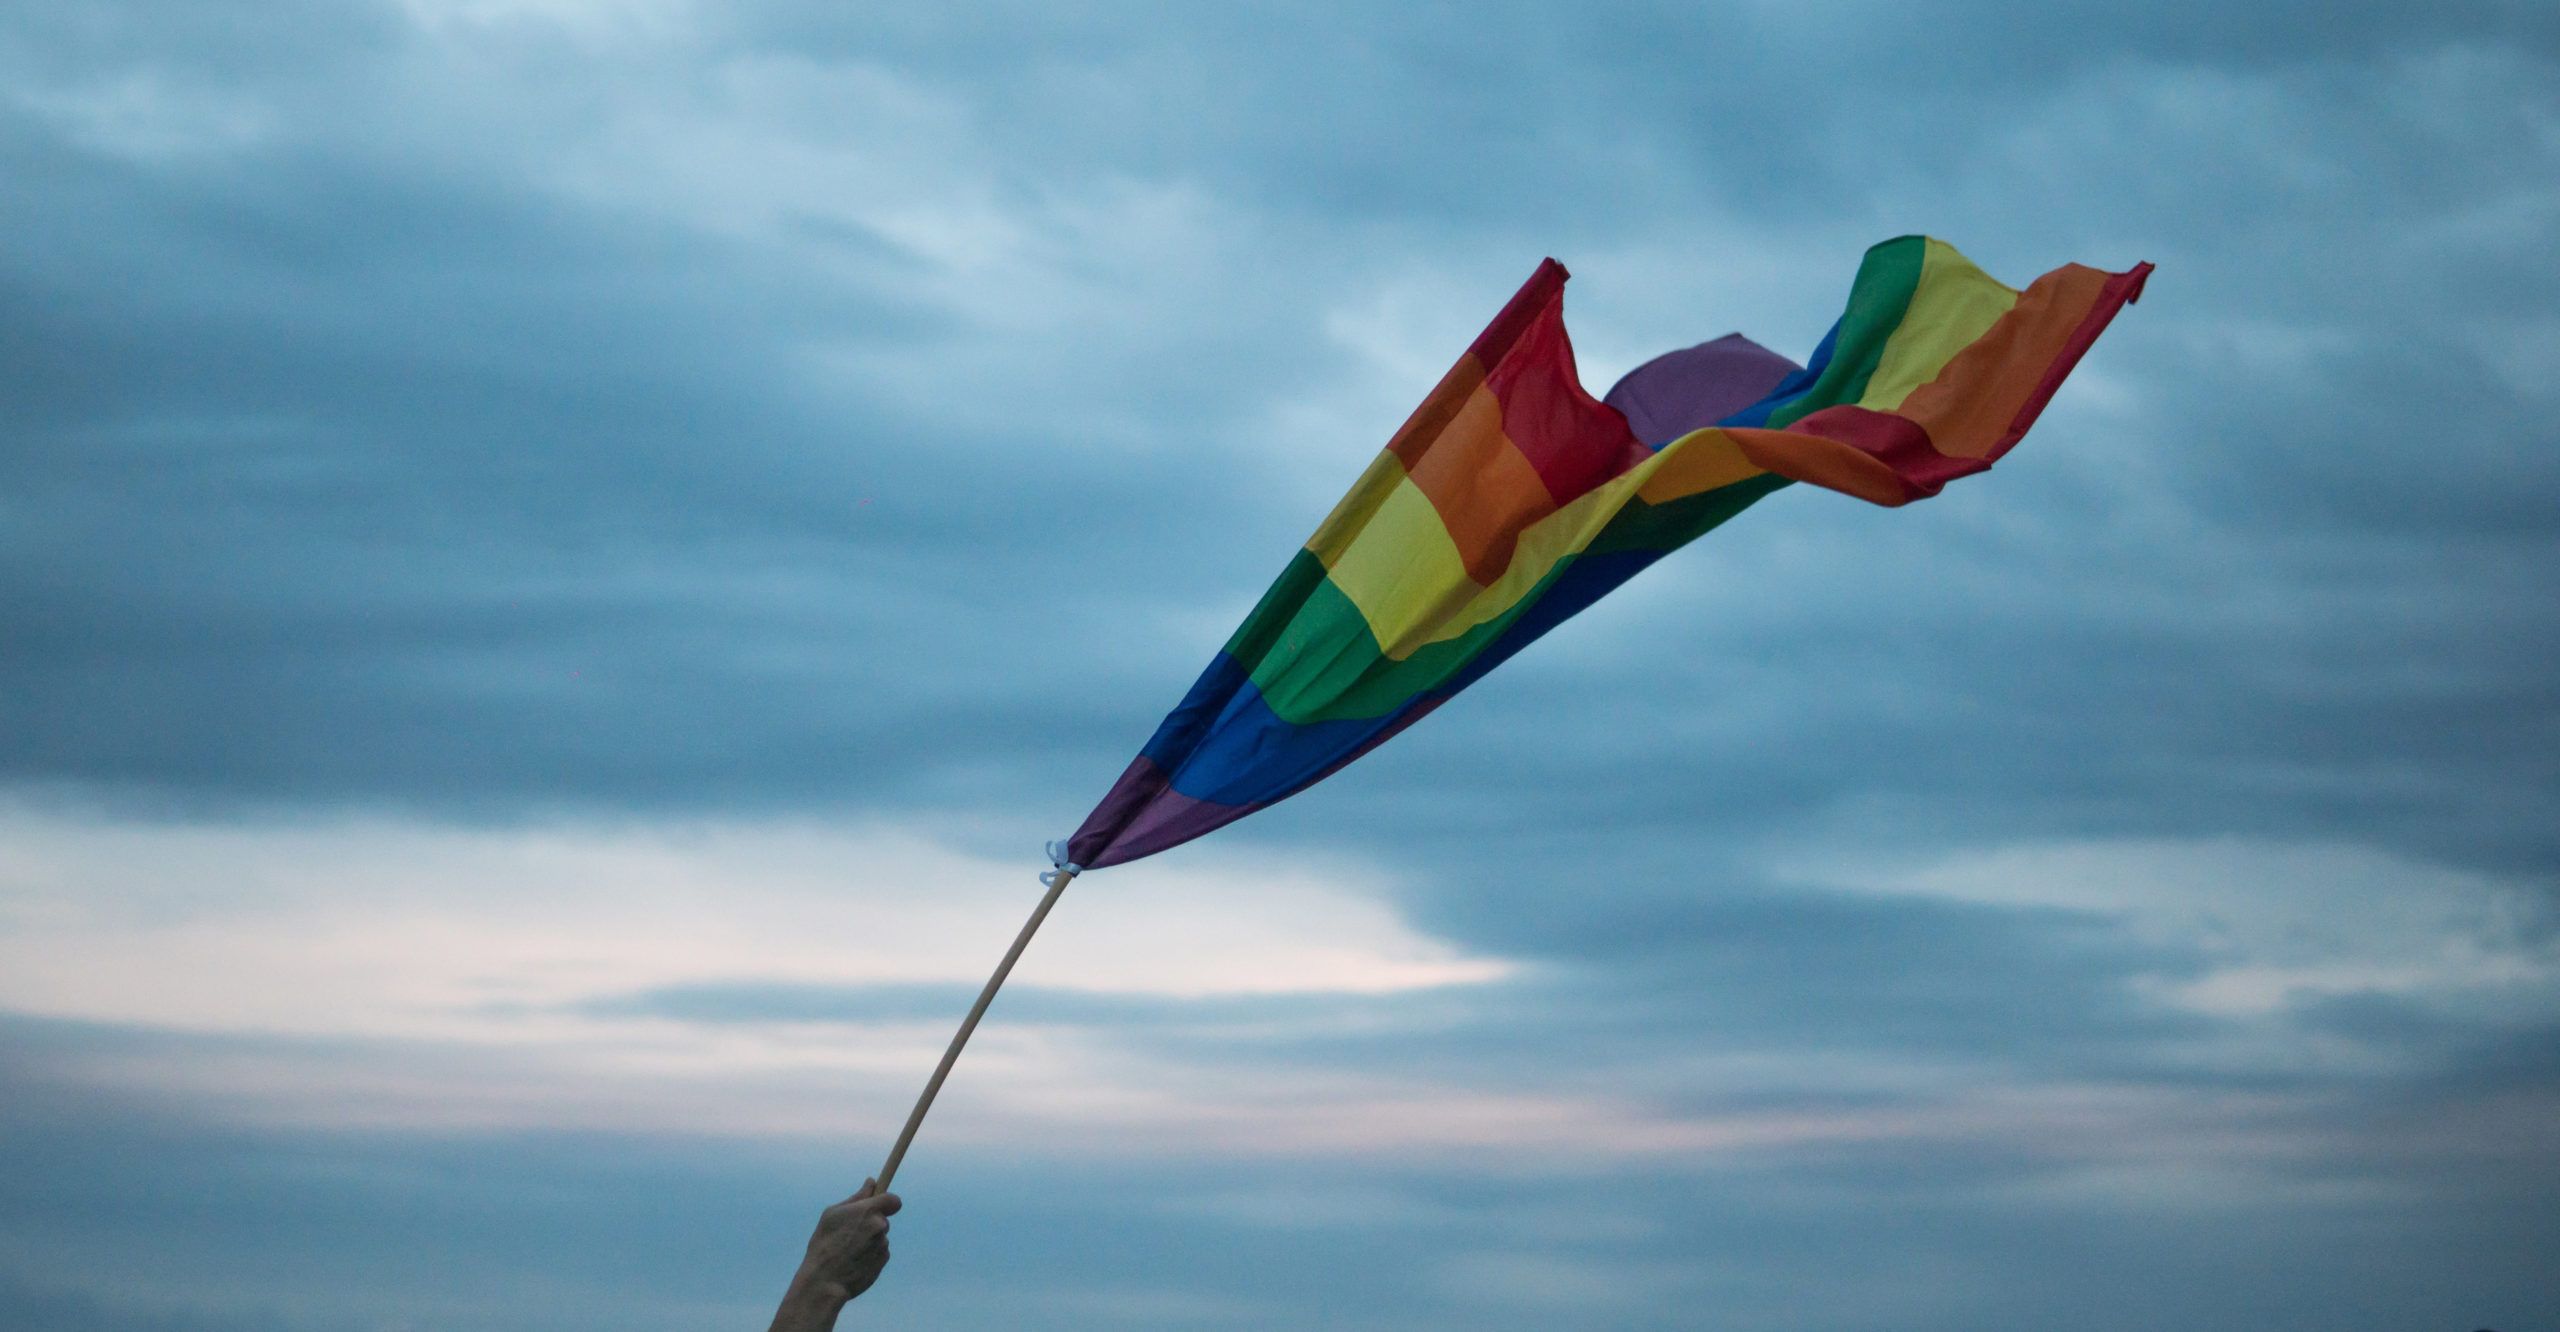 A hand holding a rainbow flag against a cloudy sky - Pride, gay